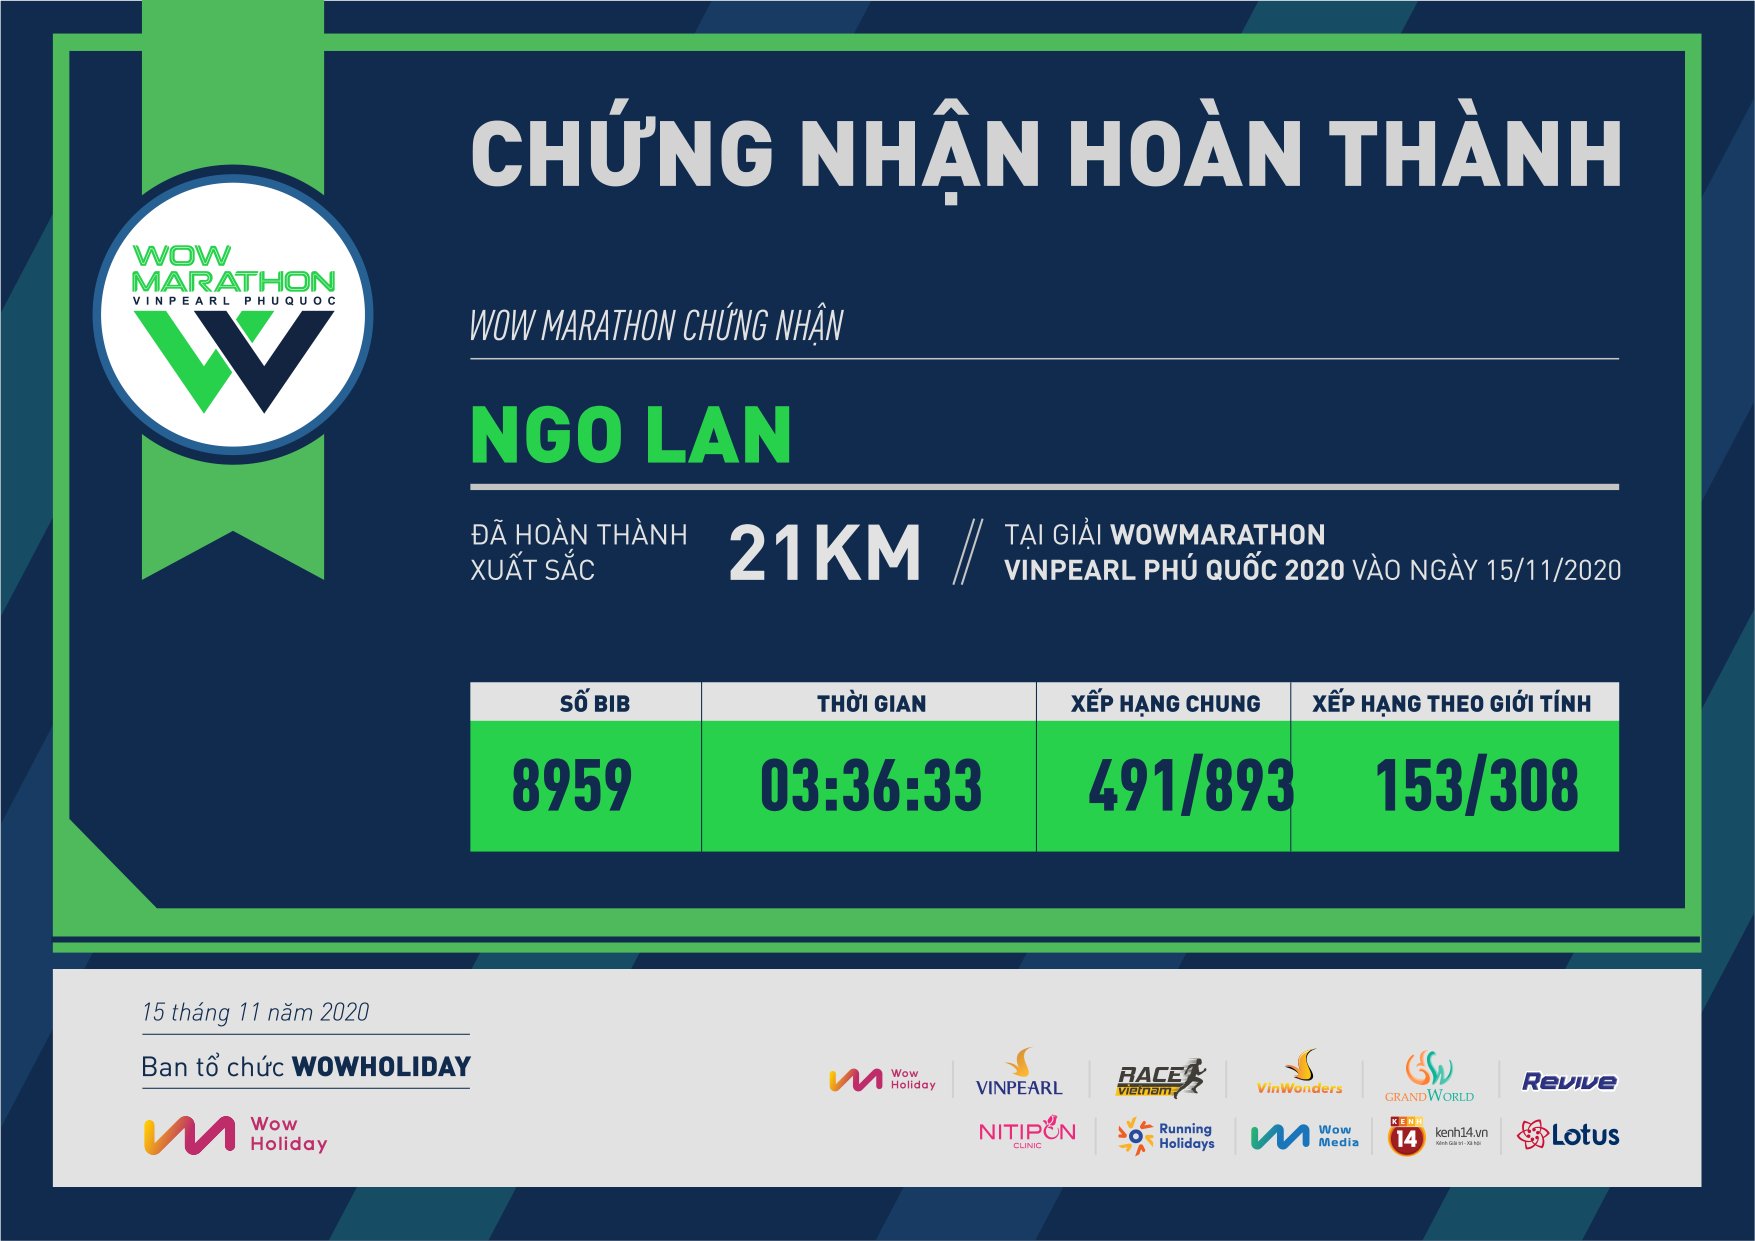 8959 - Ngo Lan